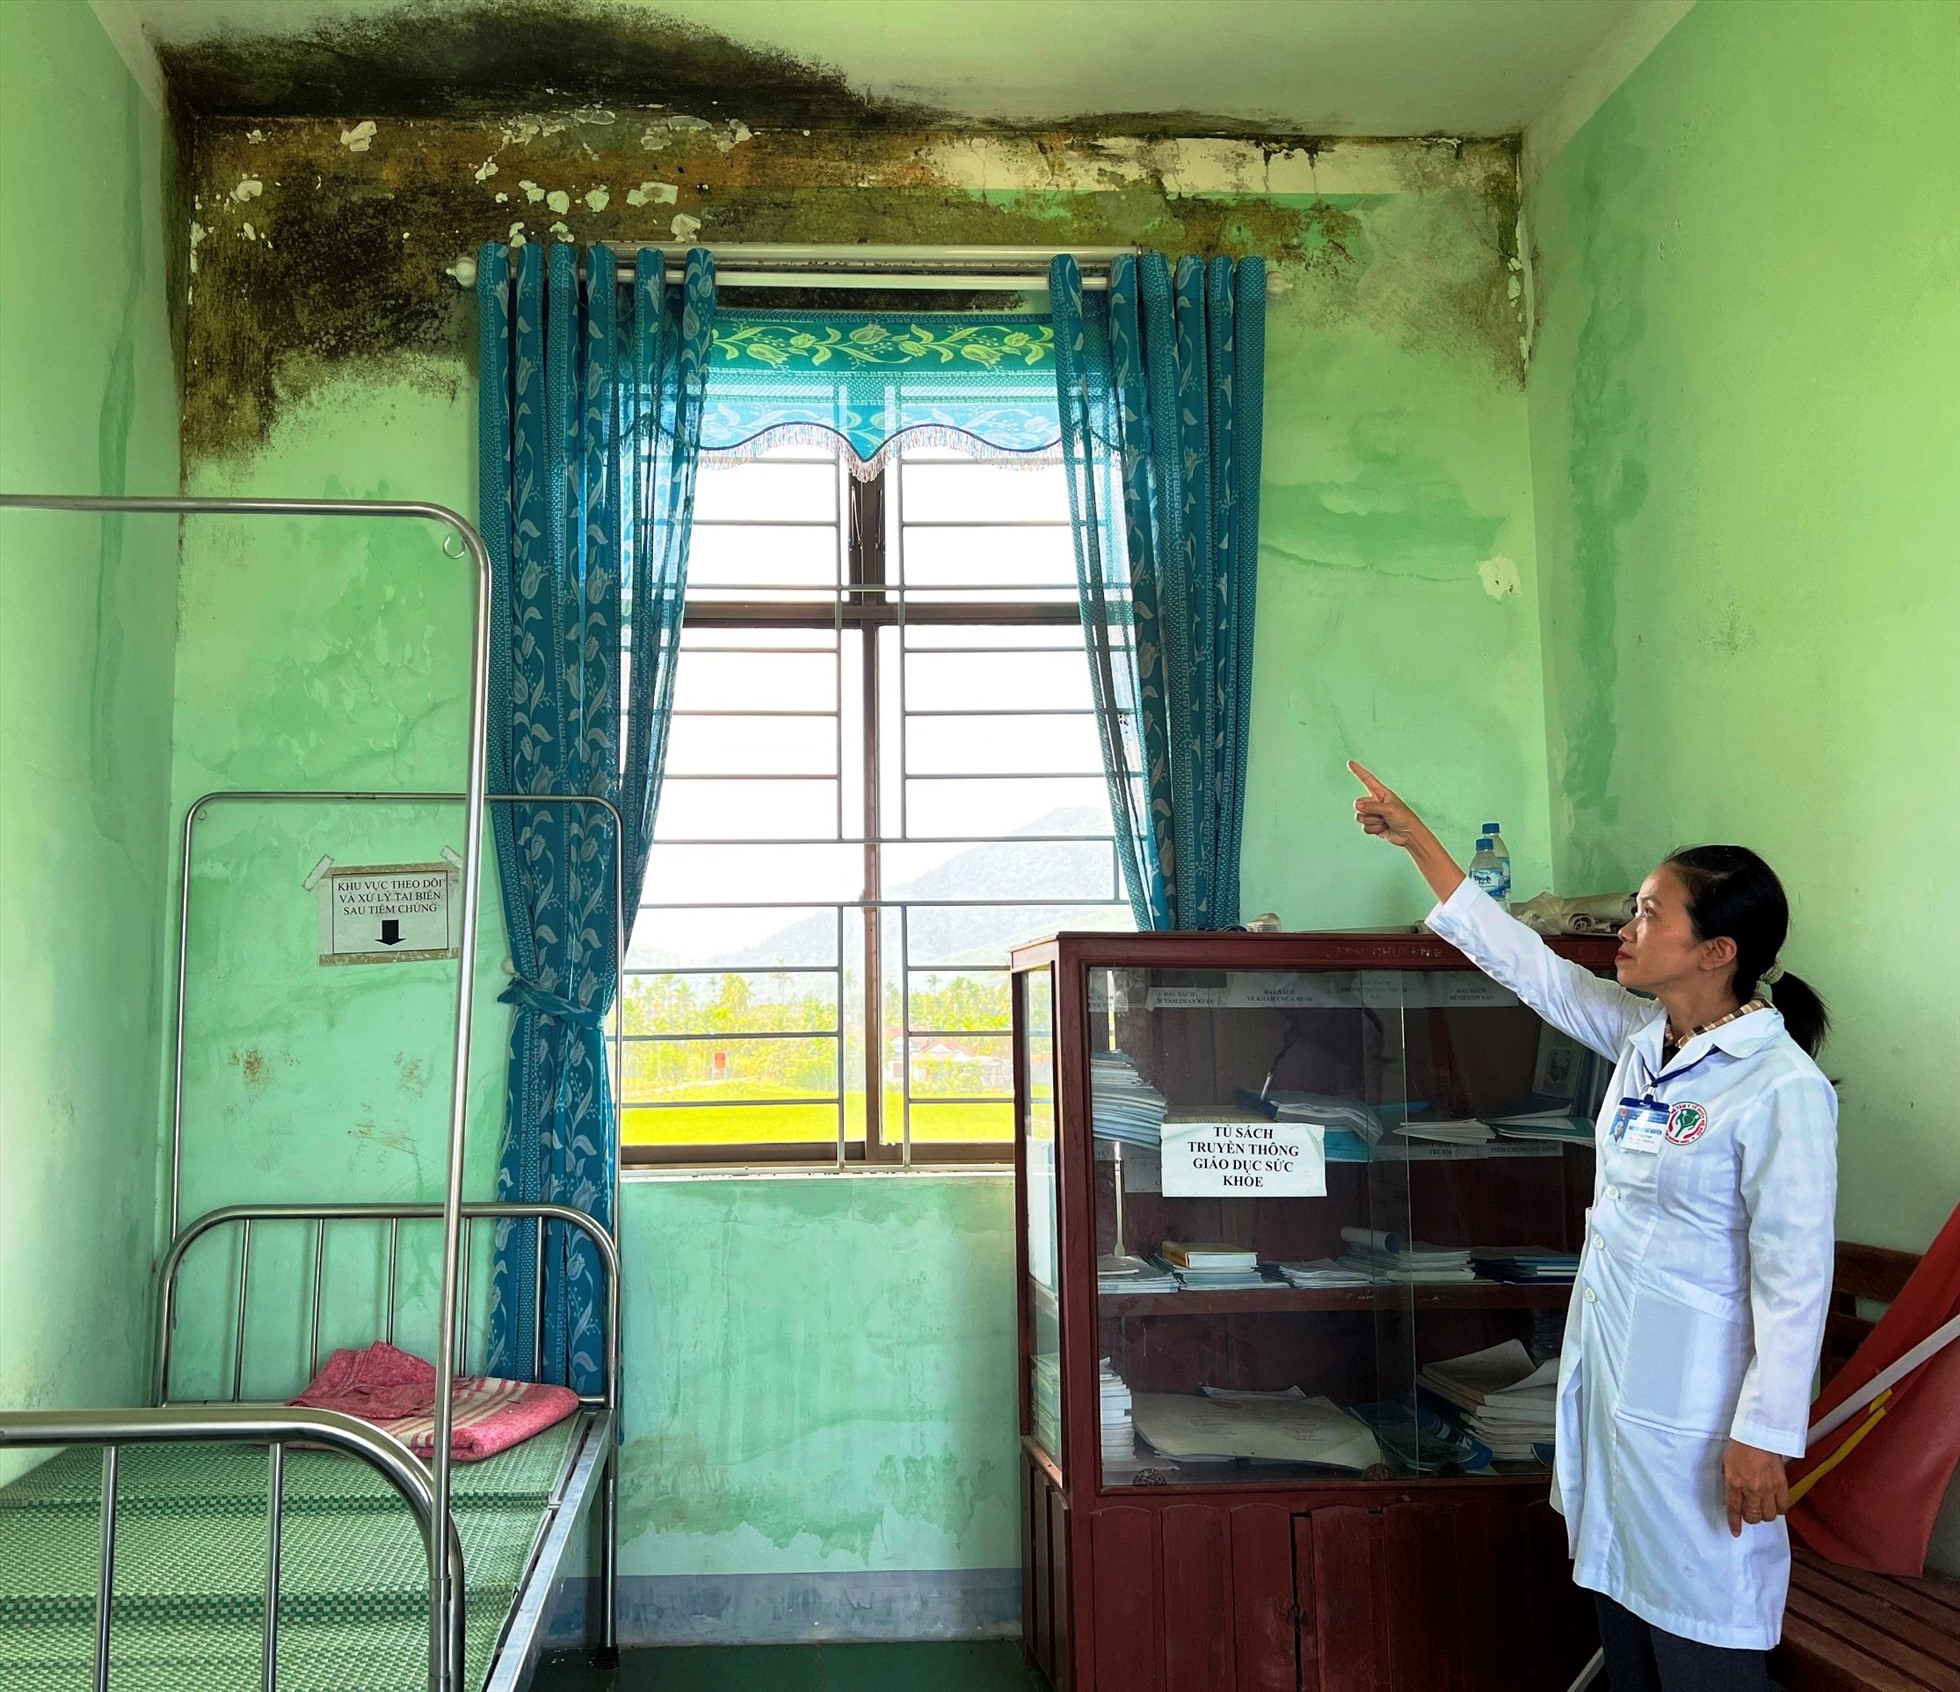 Nhiều cơ sở y tế công lập ở Quảng Ngãi hiện đang xuống cấp, chưa đáp ứng nhu cầu khám chữa bệnh ngày càng cao của người dân. Ảnh: Ngọc Viên